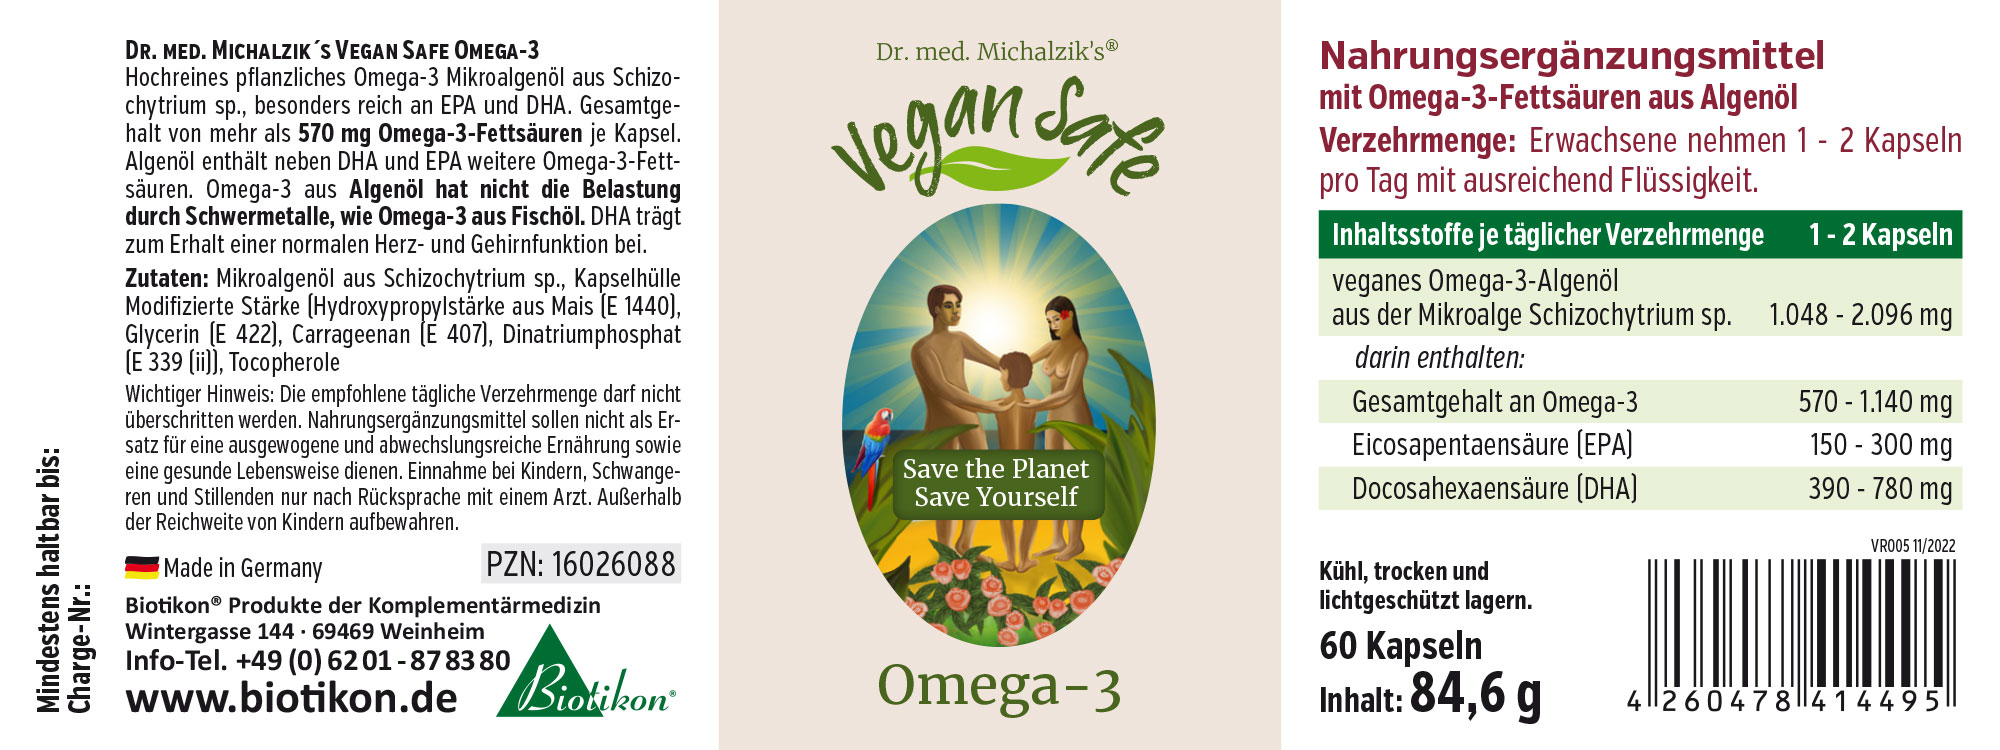 Vegan Safe Omega-3